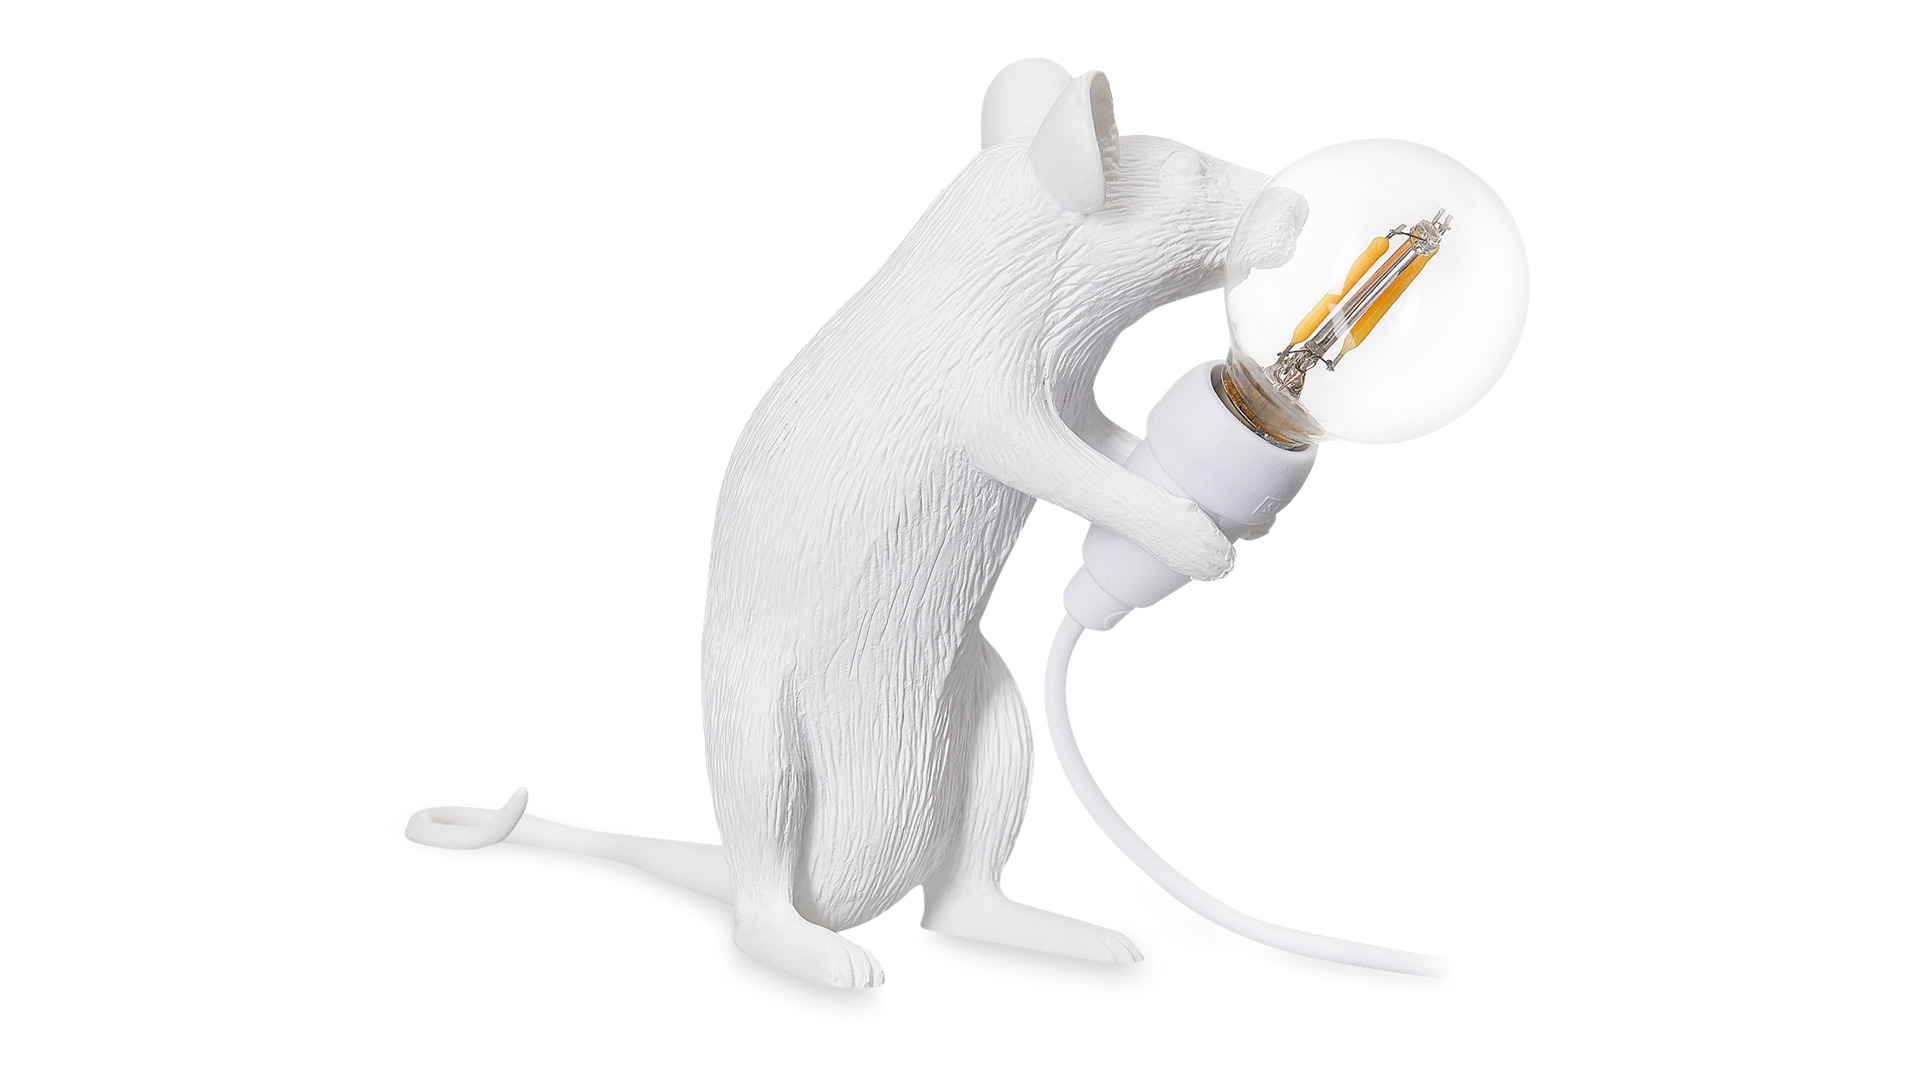 Настольная лампа Seletti Мышь сидит USB 5x15 см, h12,5 см, смола, белая